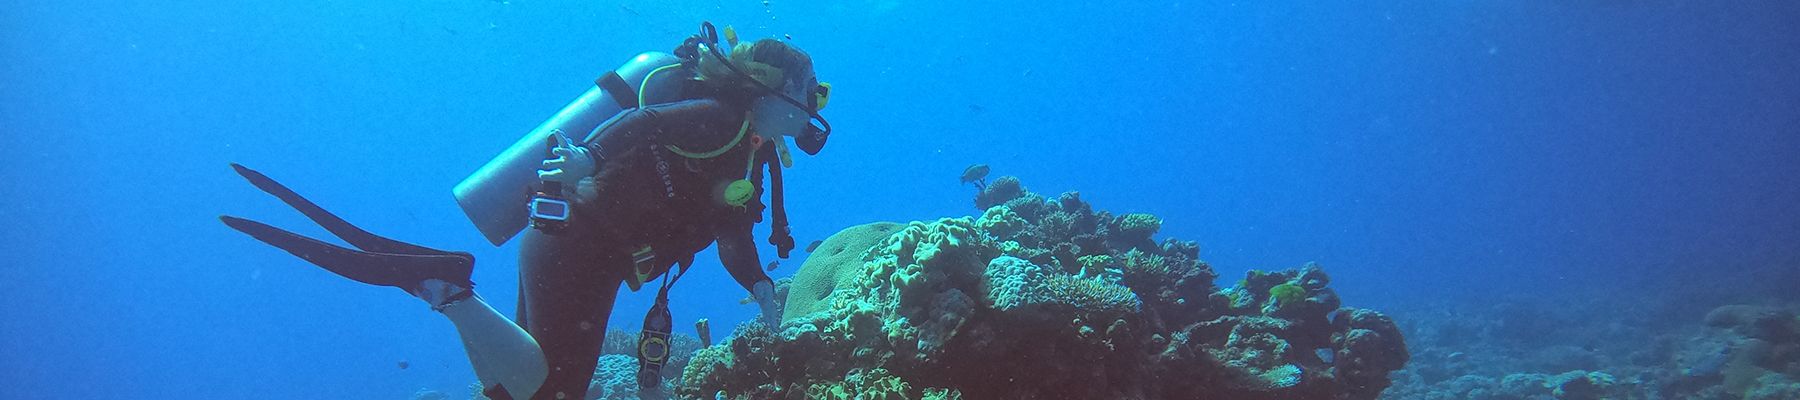 Woman scuba diving amongst corals